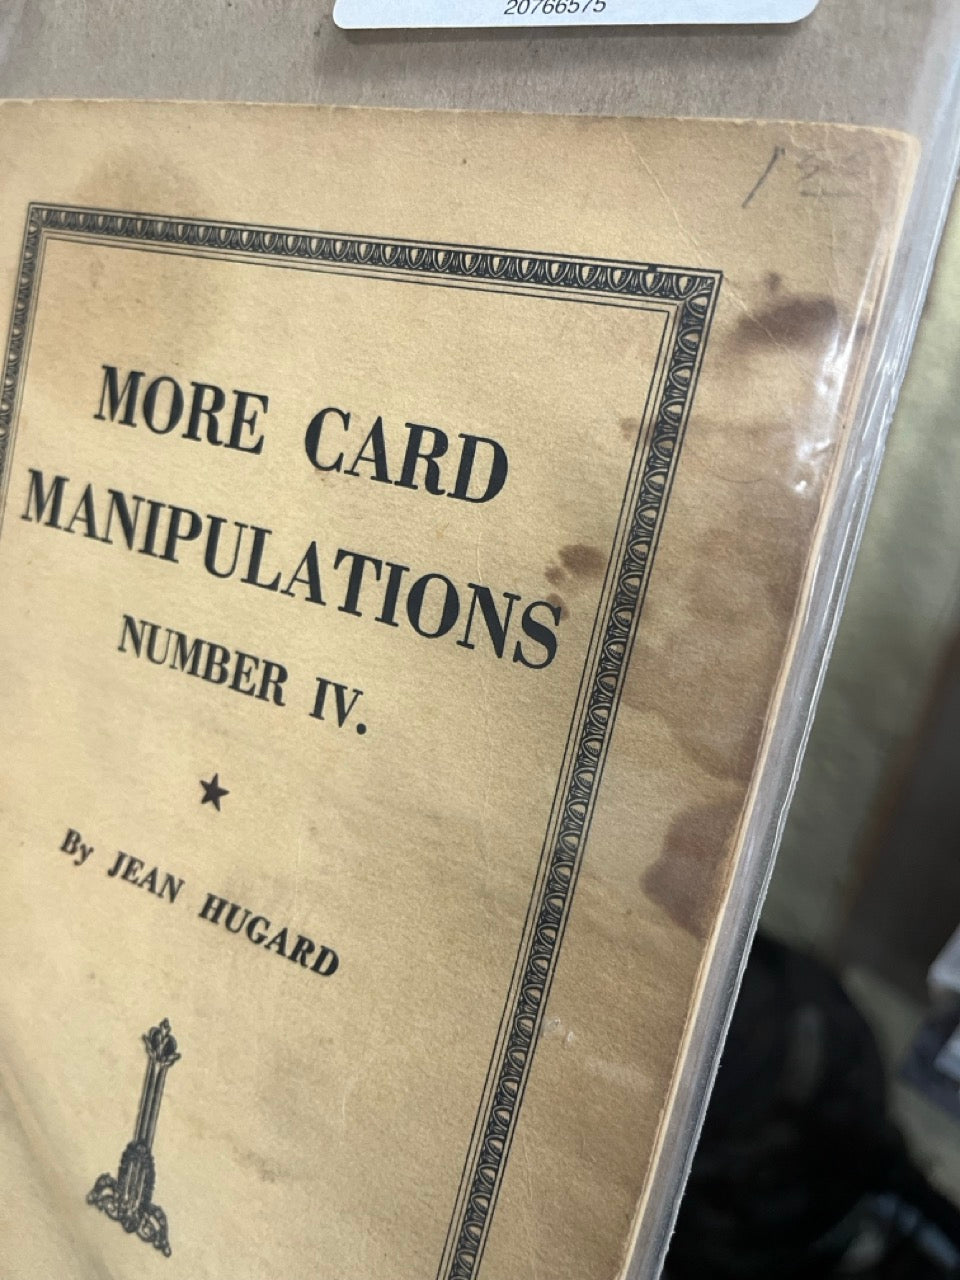 More Card Manipulations #4 - Jean Hugard